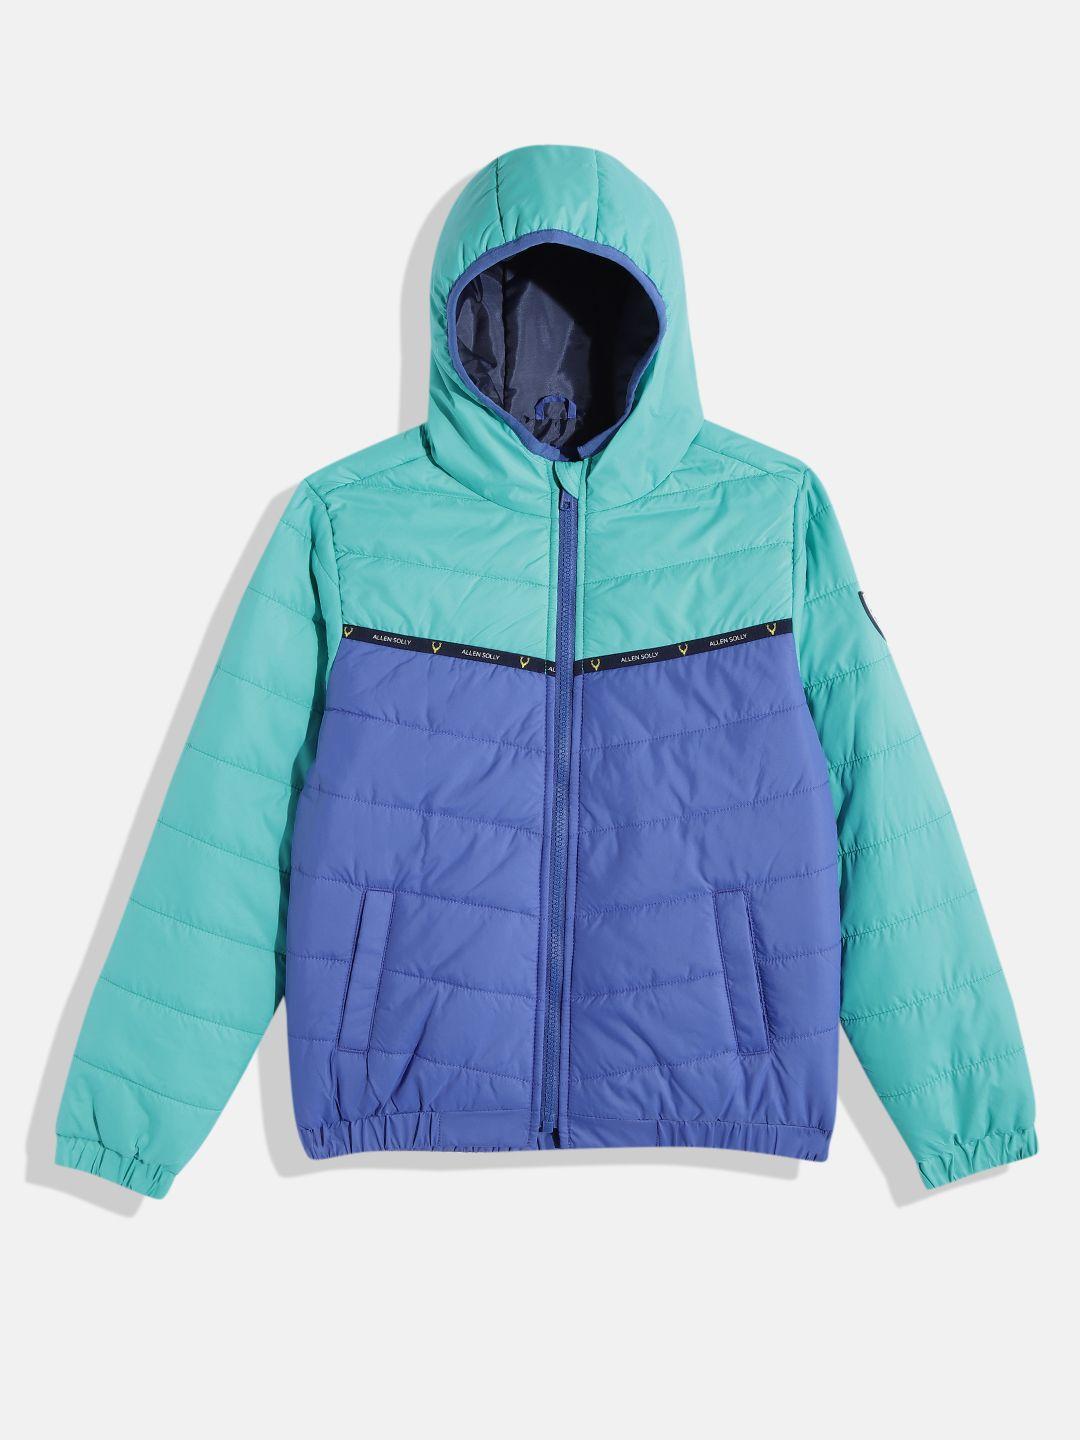 allen solly junior boys blue & green colourblocked hooded padded jacket